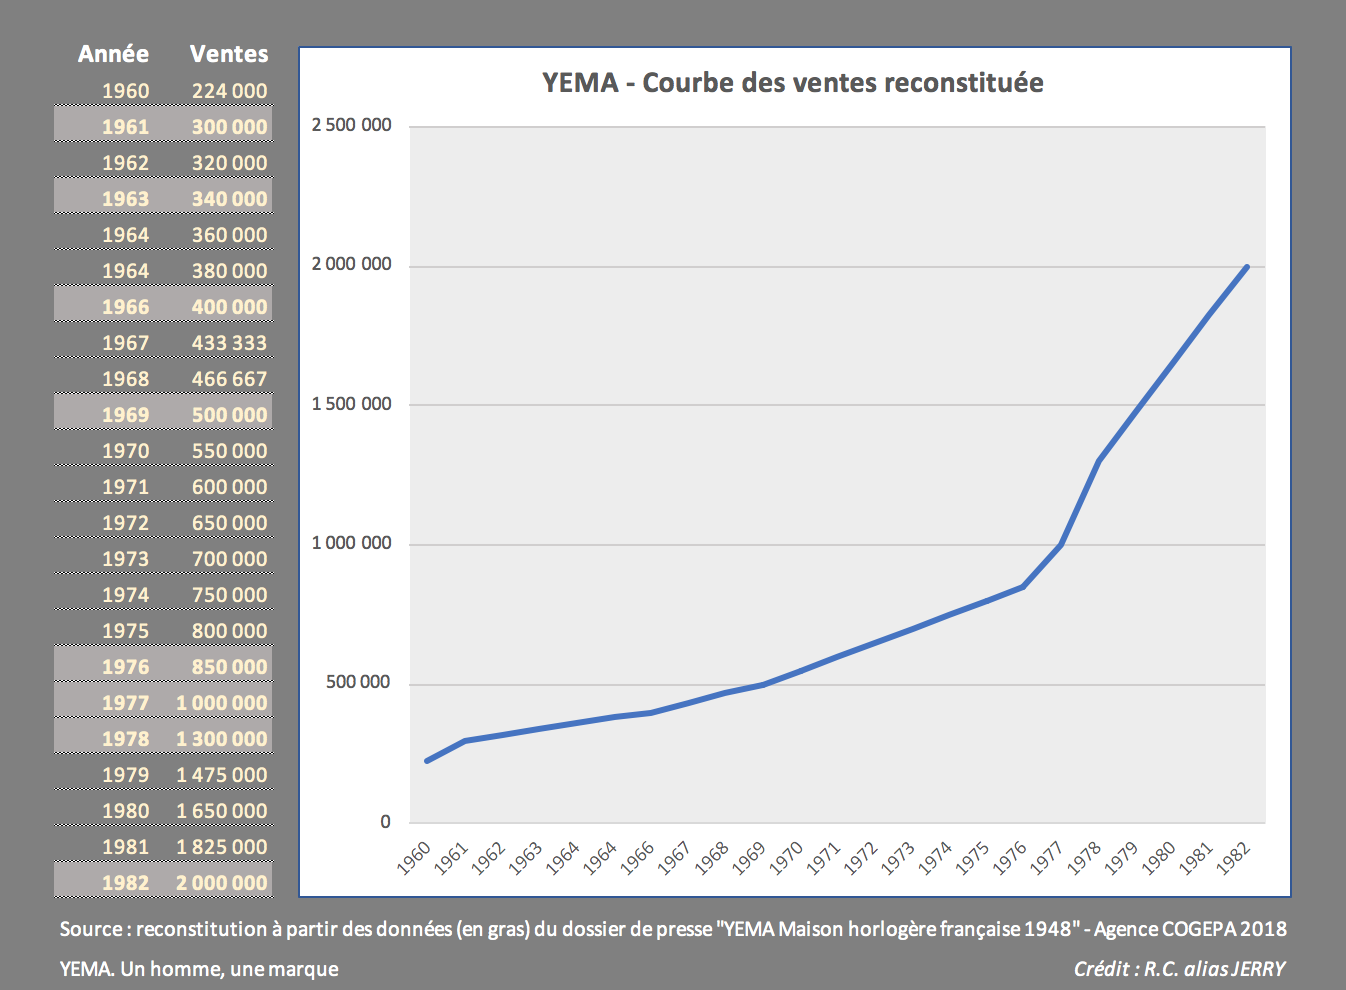 Histoire YEMA_Courbe des ventes YEMA de 1960 à 1982. Crédit R.C. alias Jerry